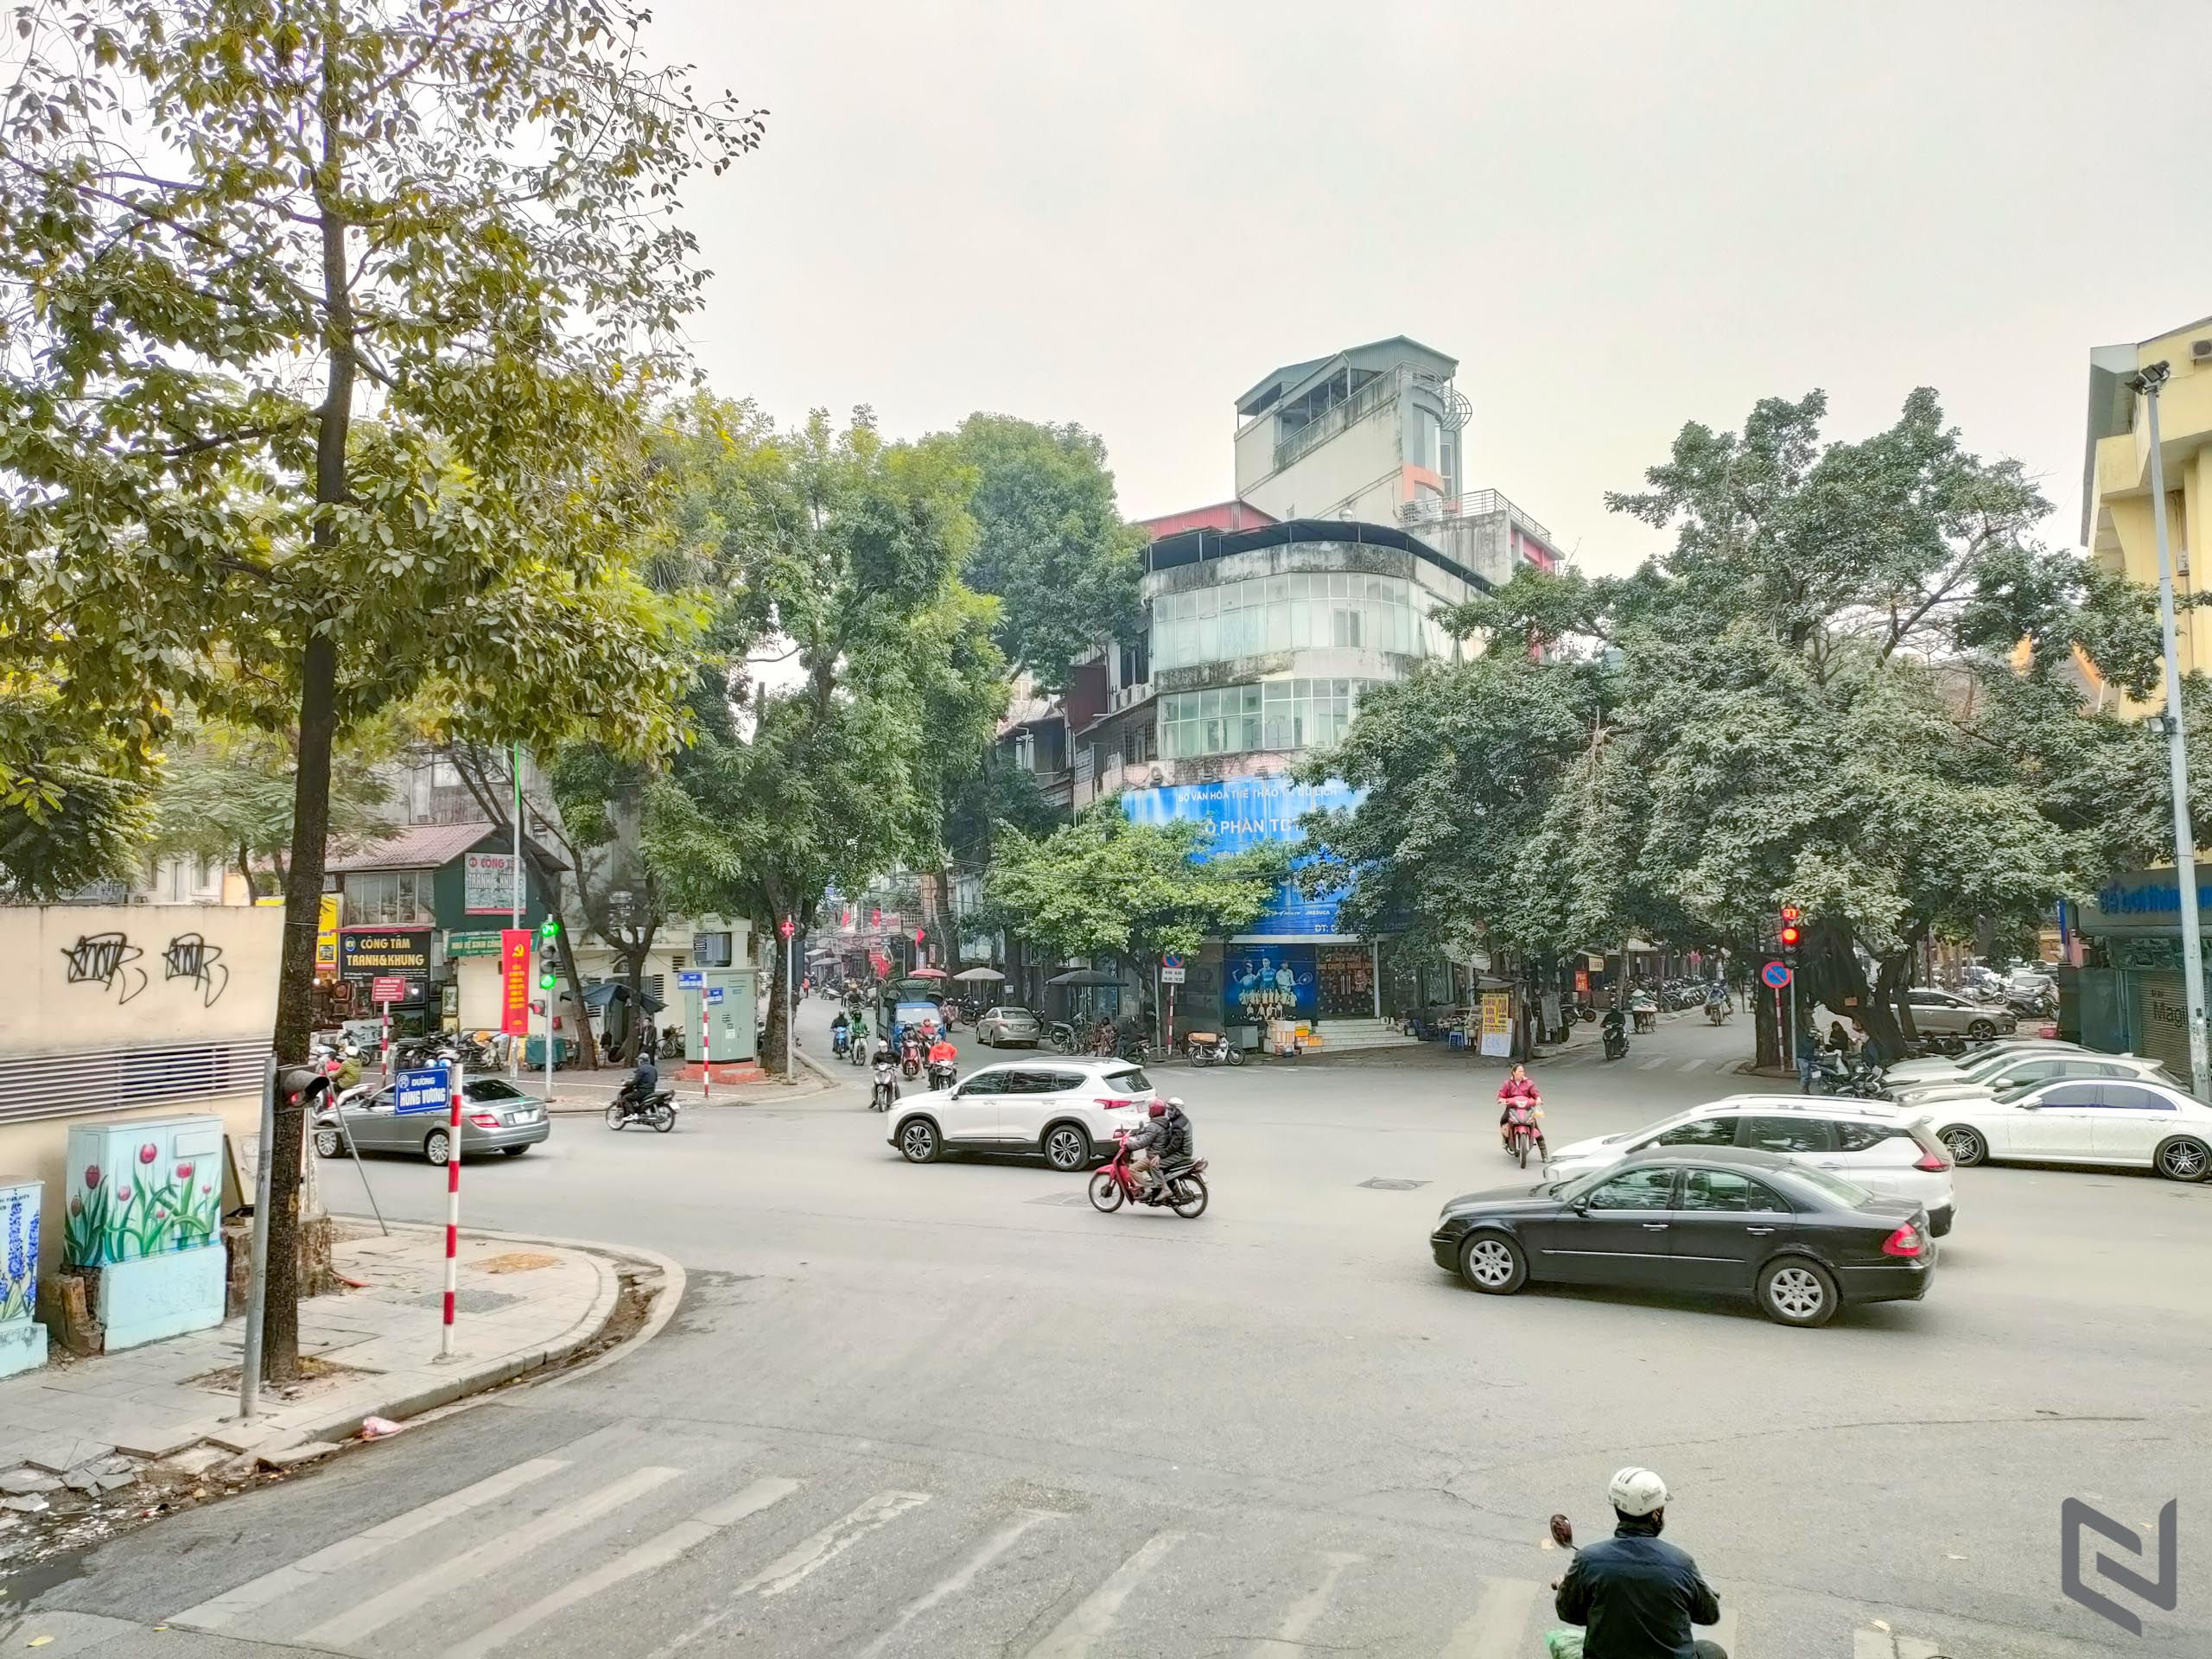 Bộ ảnh du lịch Hà Nội bằng xe bus 2 tầng chụp bởi OPPO Reno5